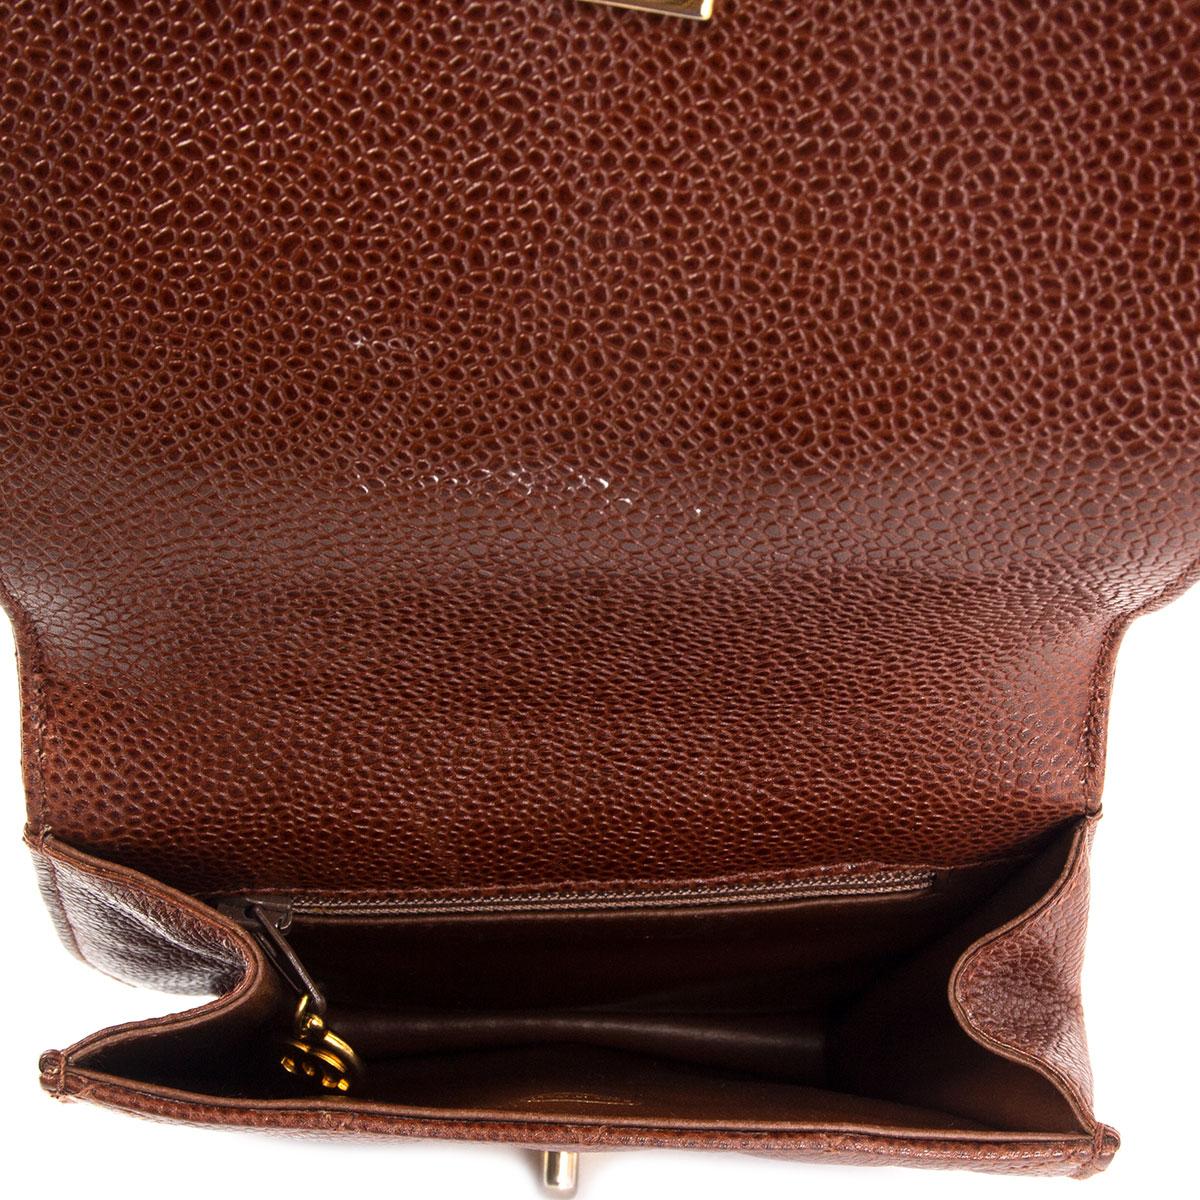 CHANEL chestnut brown quilted Caviar leather VINTAGE 1990 Belt Bag 3